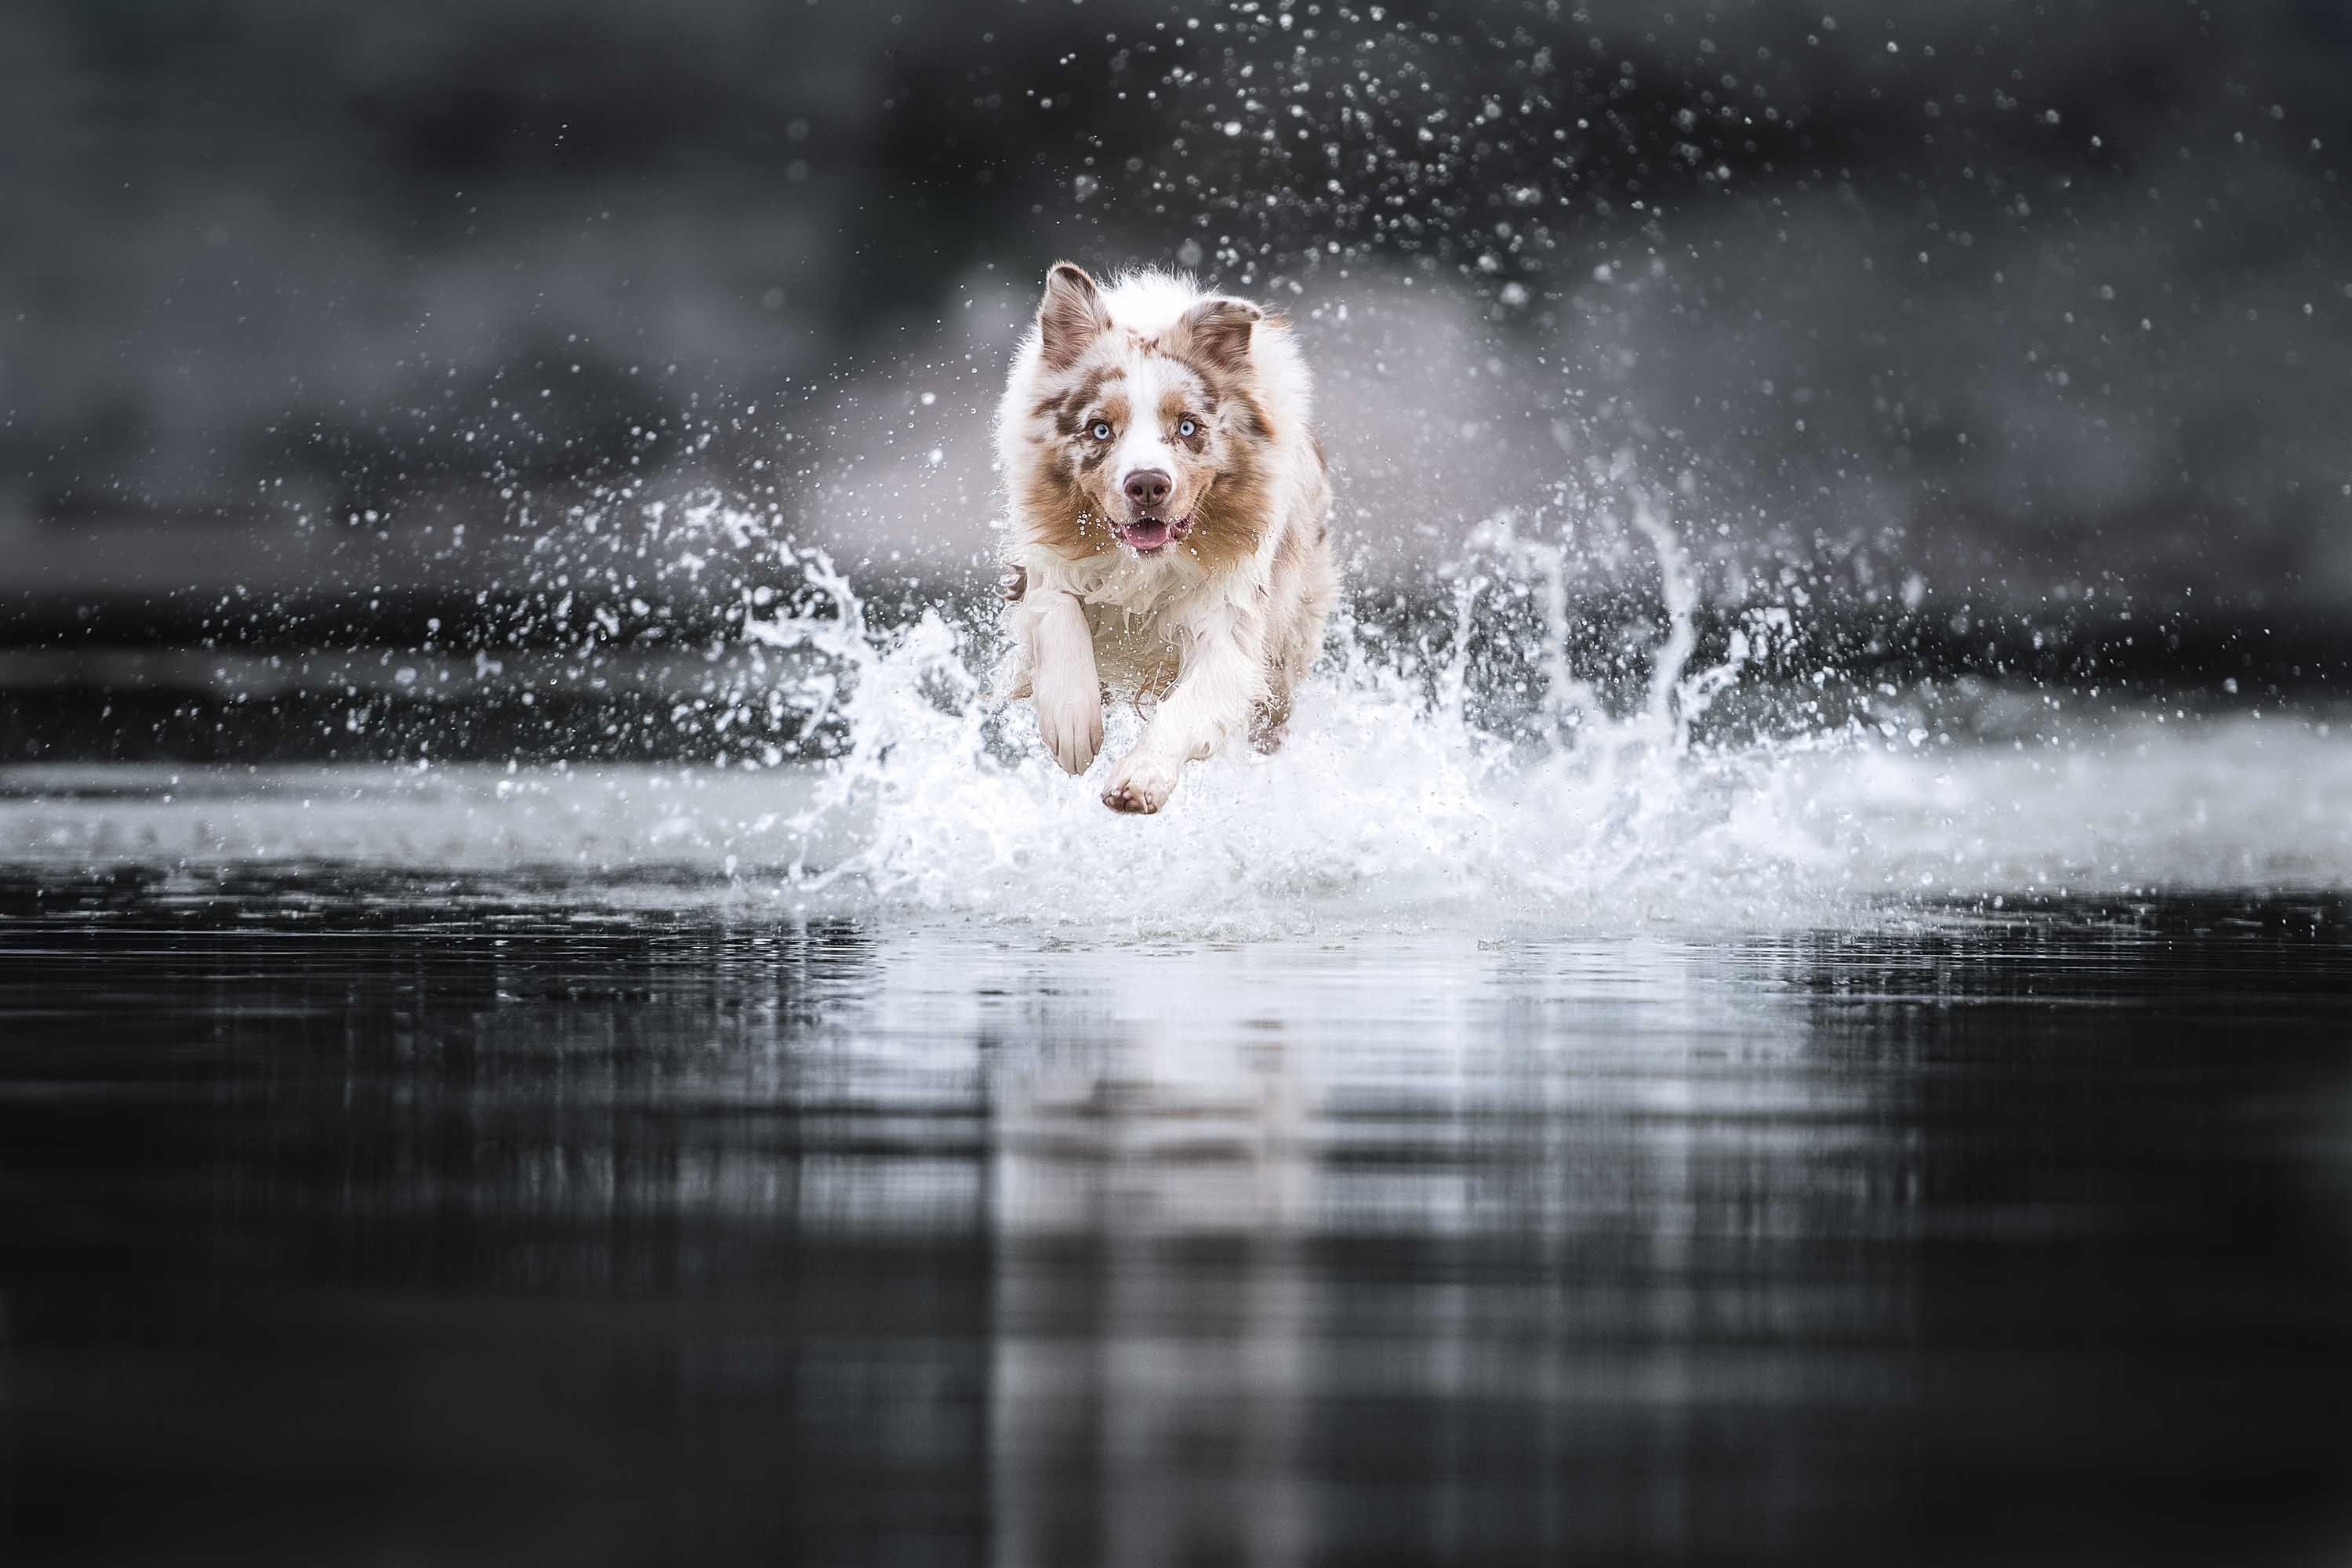 dogs in action water model australian shepherd